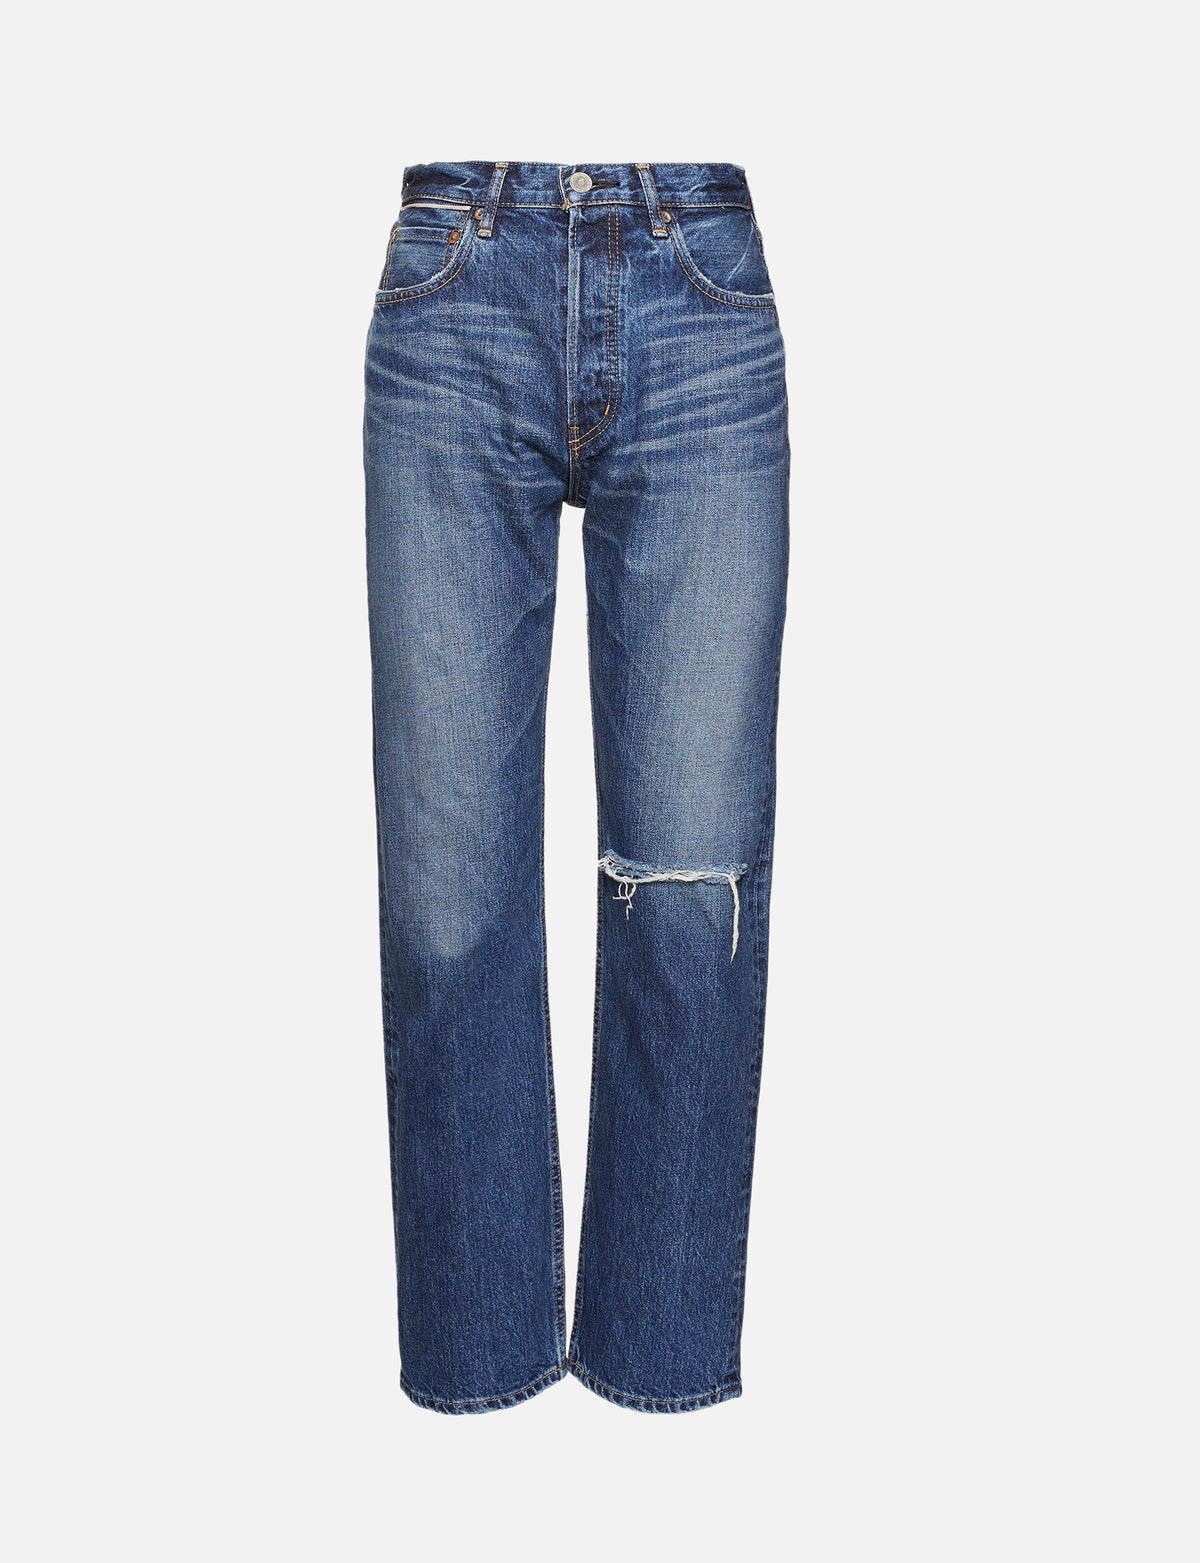 view 1 - Widtsoe Wide Straight Jean